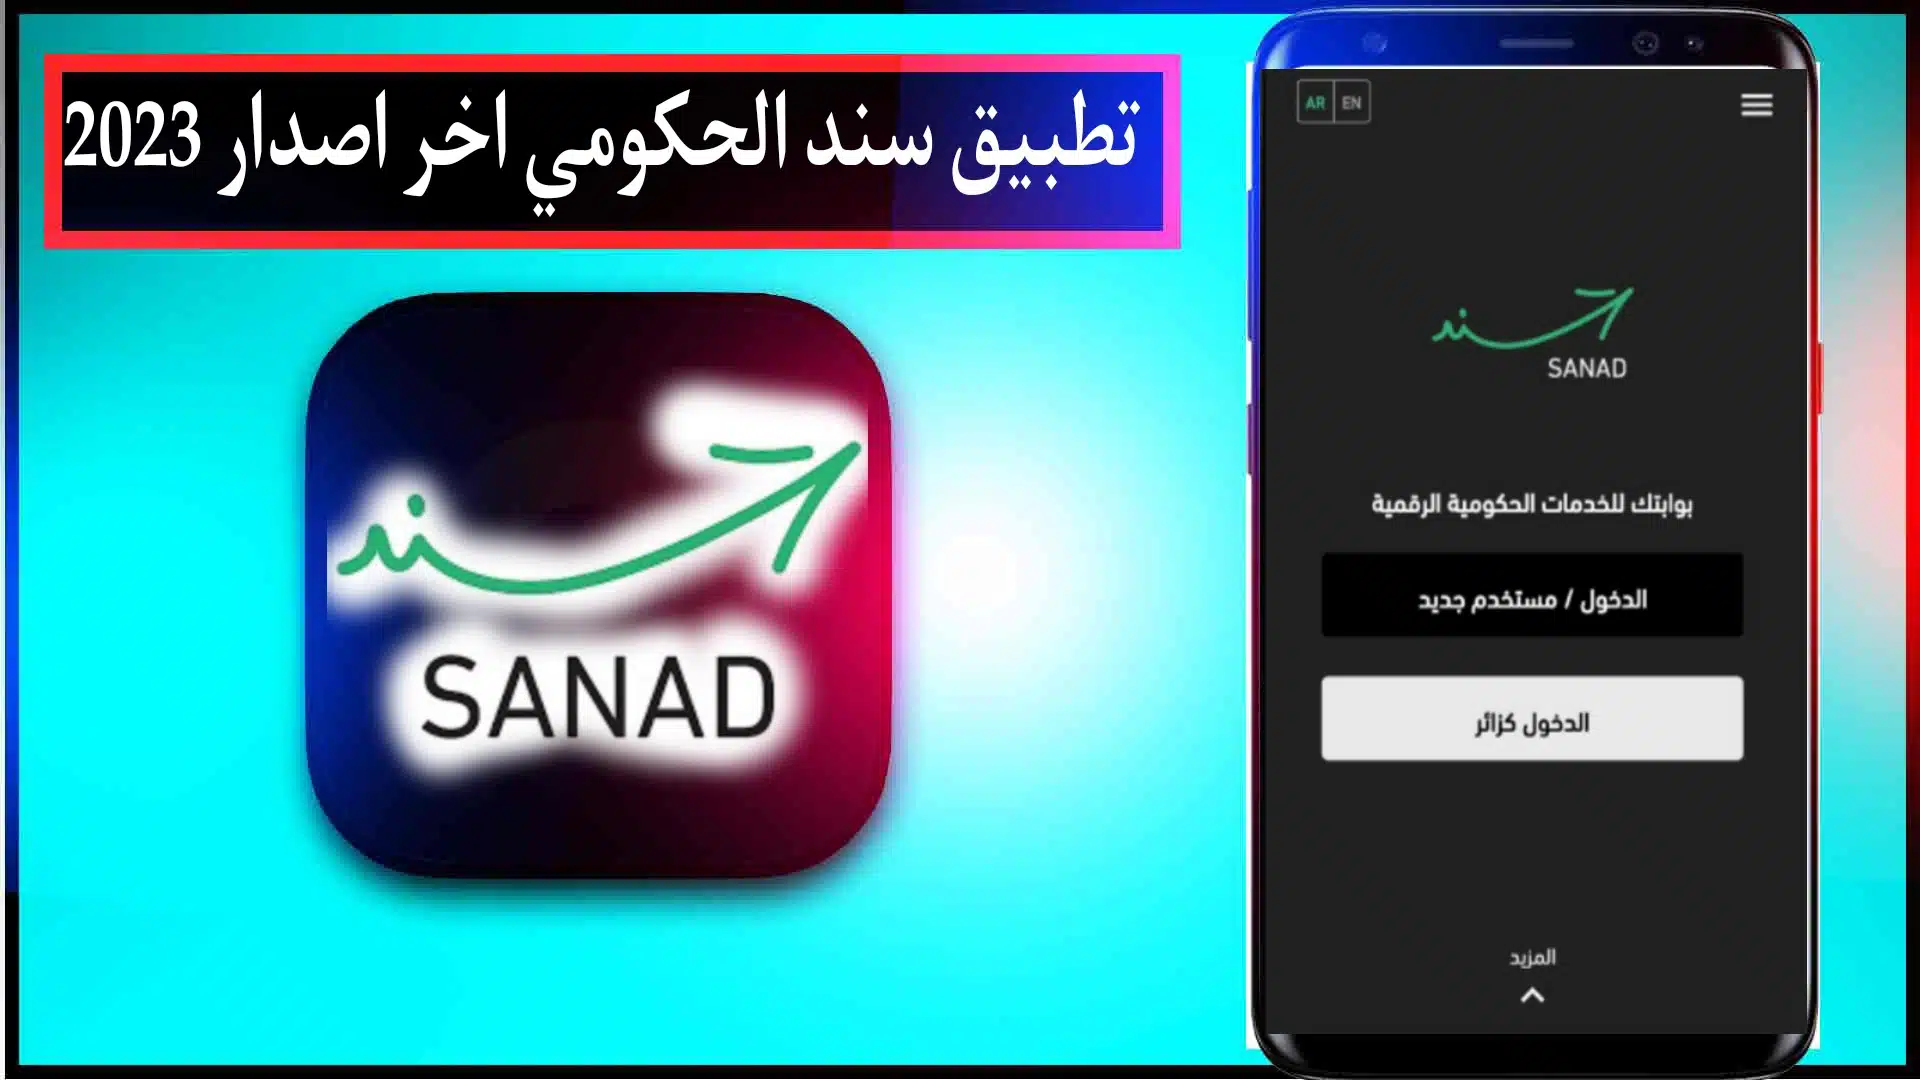 تحميل تطبيق سند الحكومي اخر اصدار sanad jordan للاندرويد وللايفون 2